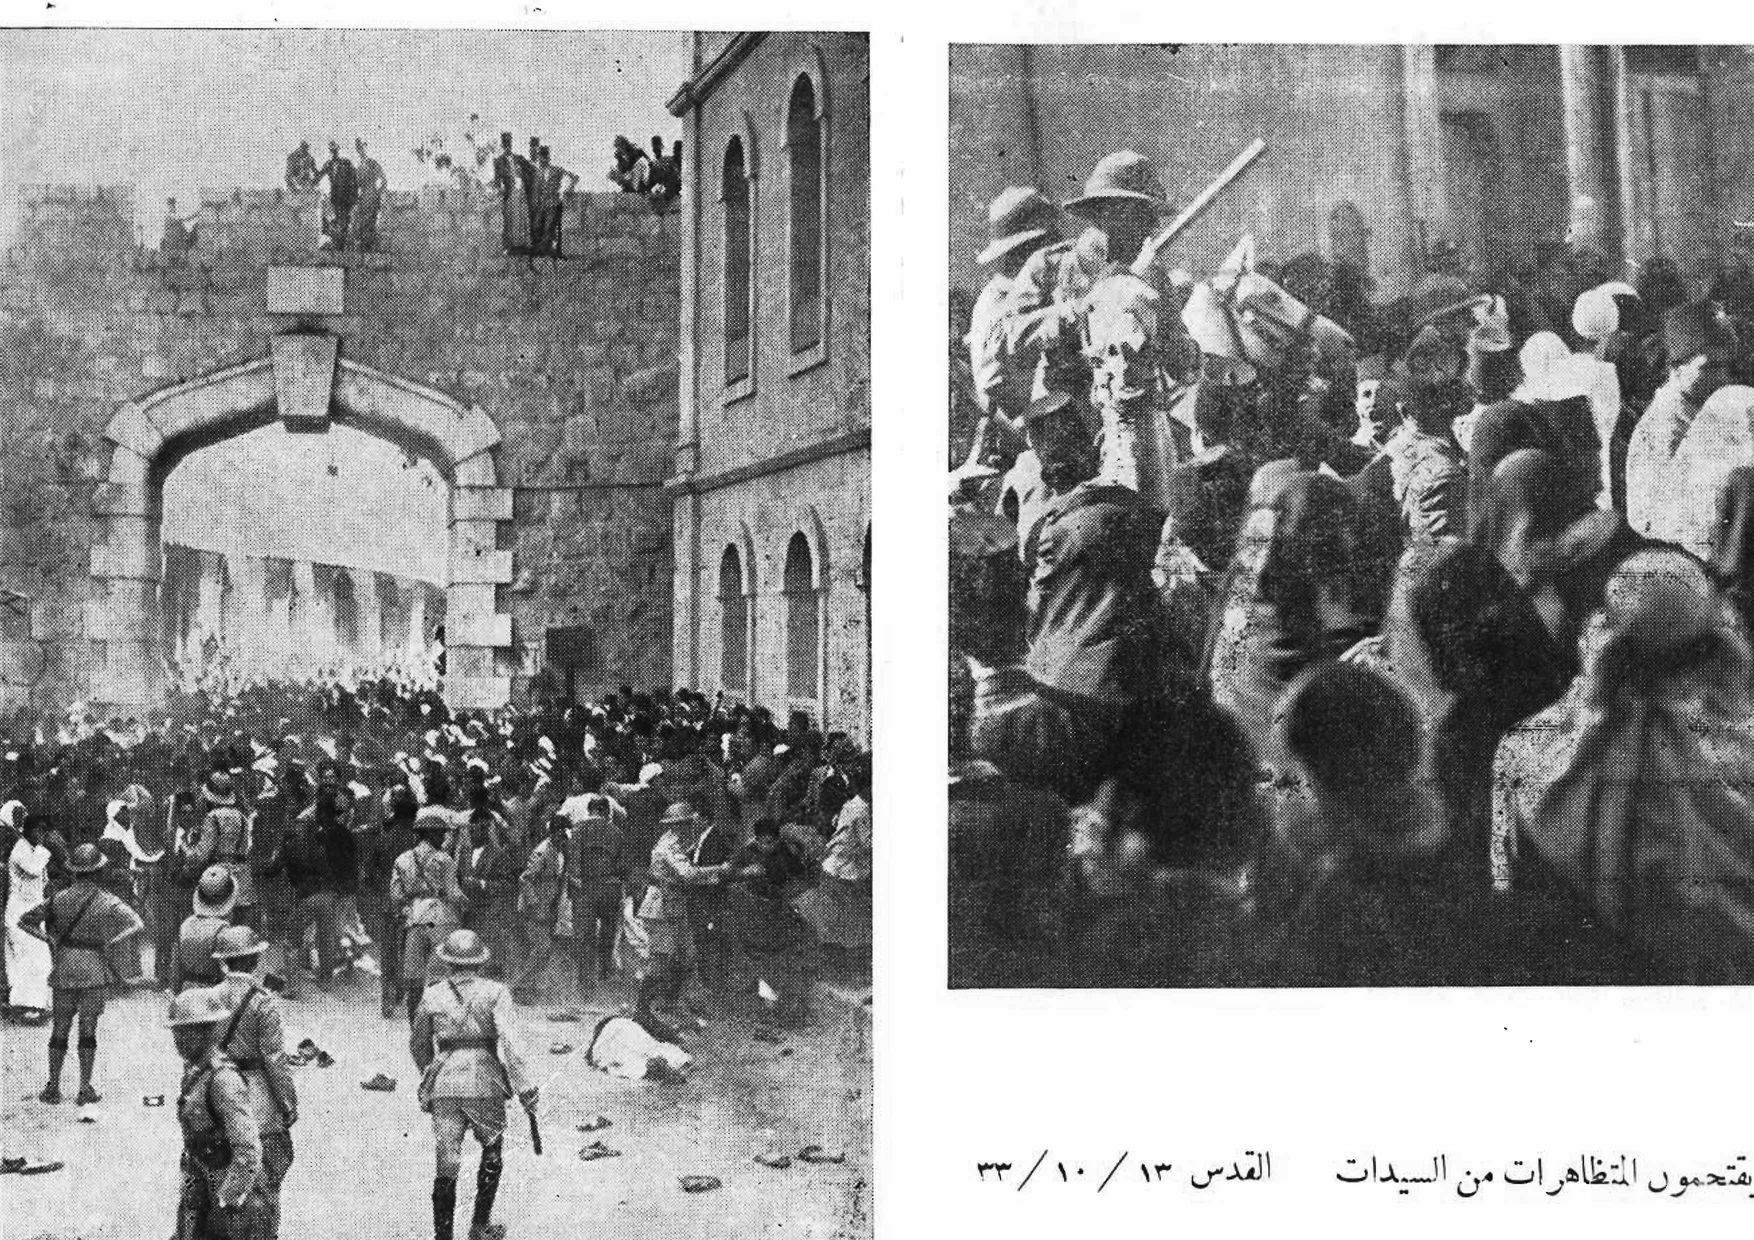 يقتحمون المتظاهرات من السيدات القدس ١٩٣٣ women protest 1933 Jerusalem